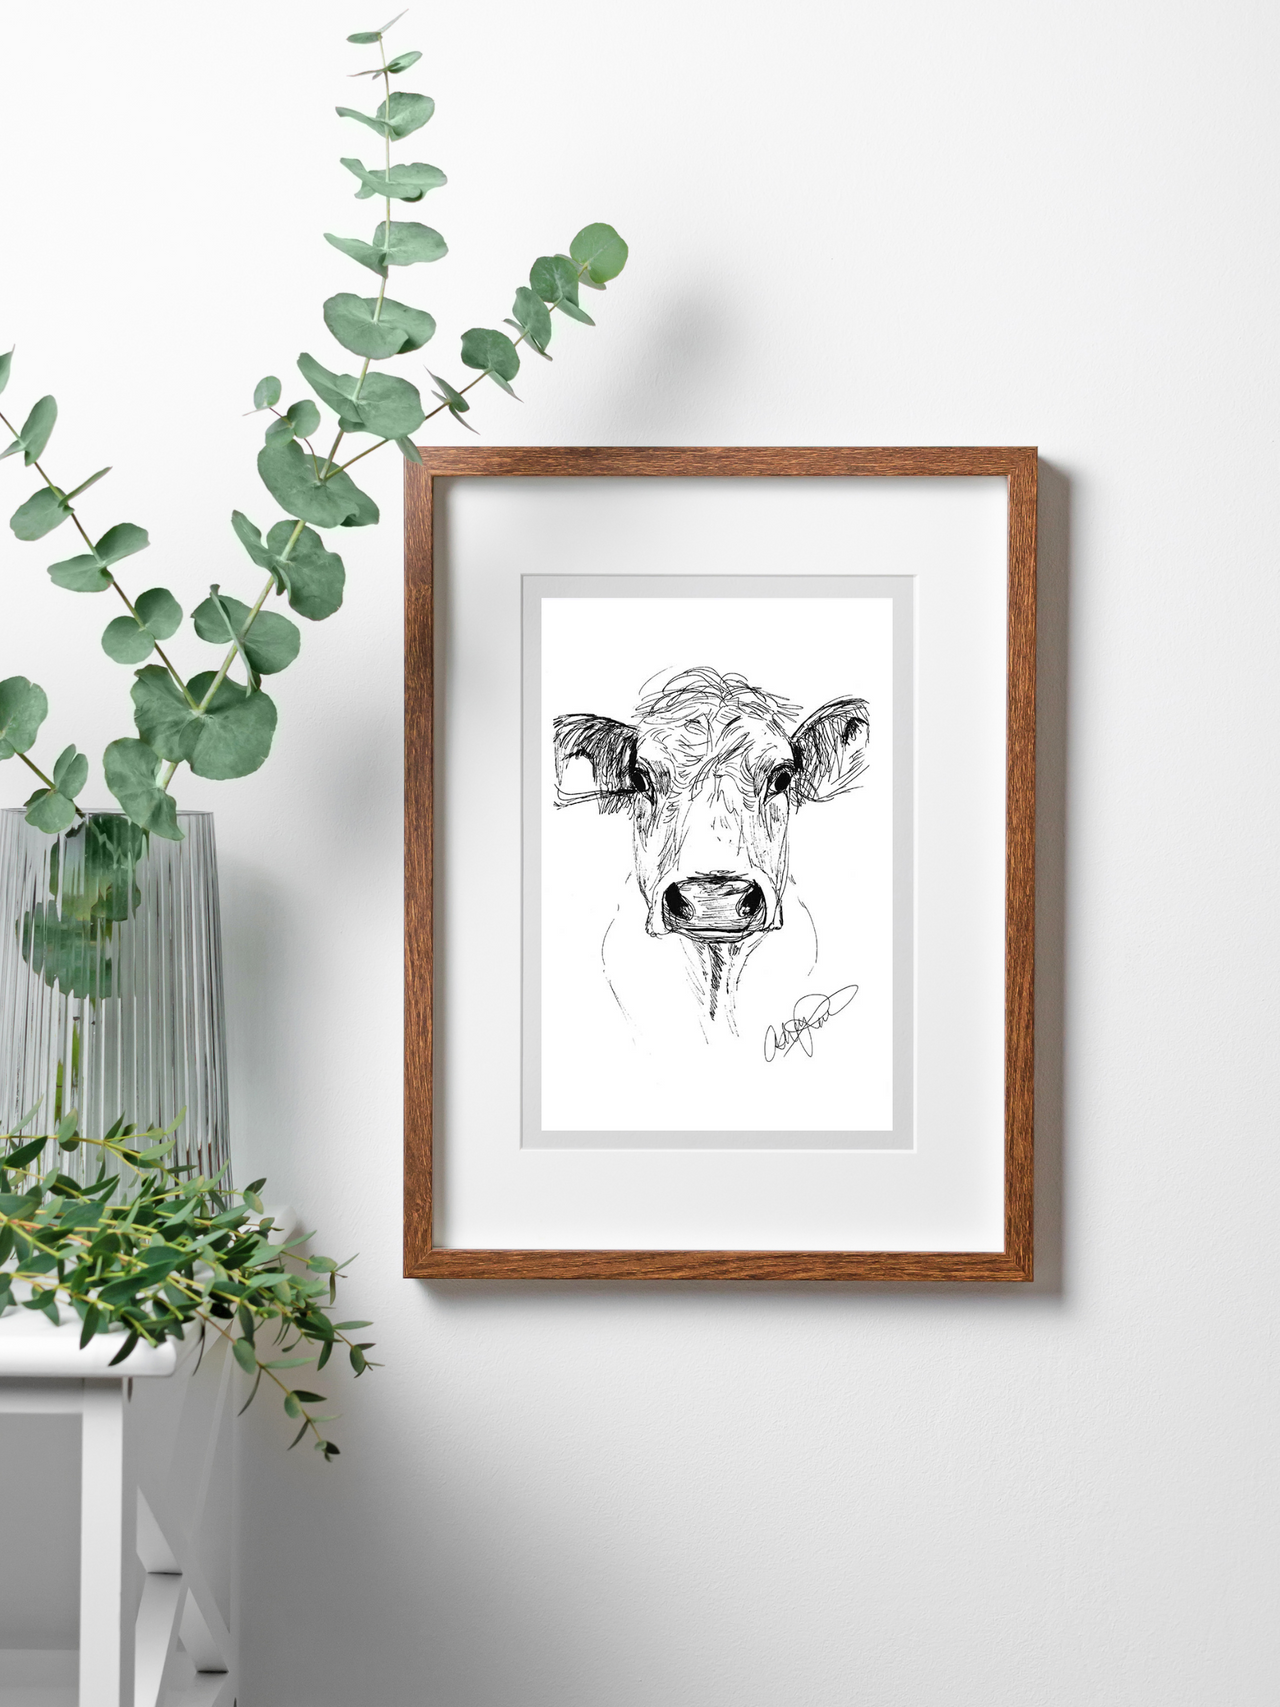 Ink Cow Sketch - Original Art Print, Framed in a wooden frame.